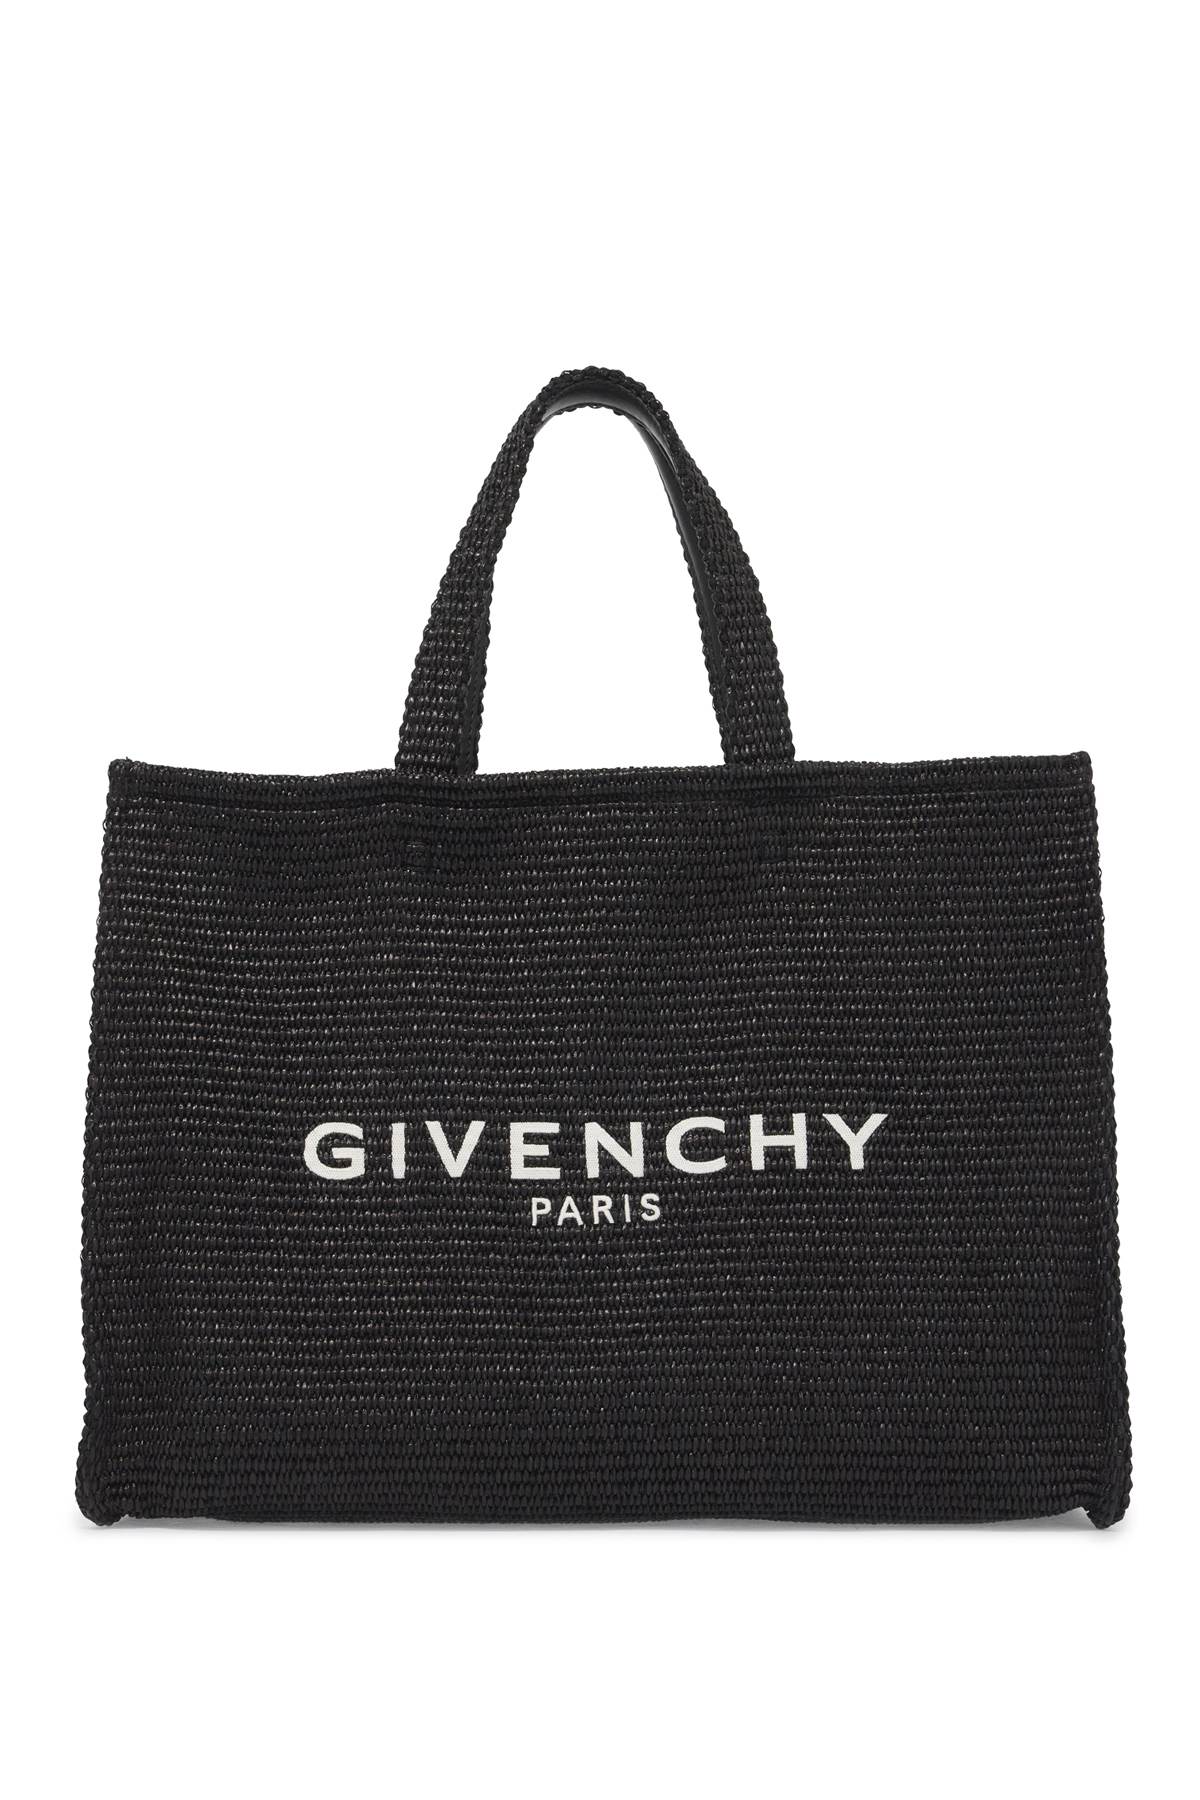 Givenchy GIVENCHY medium g-tote bag in r